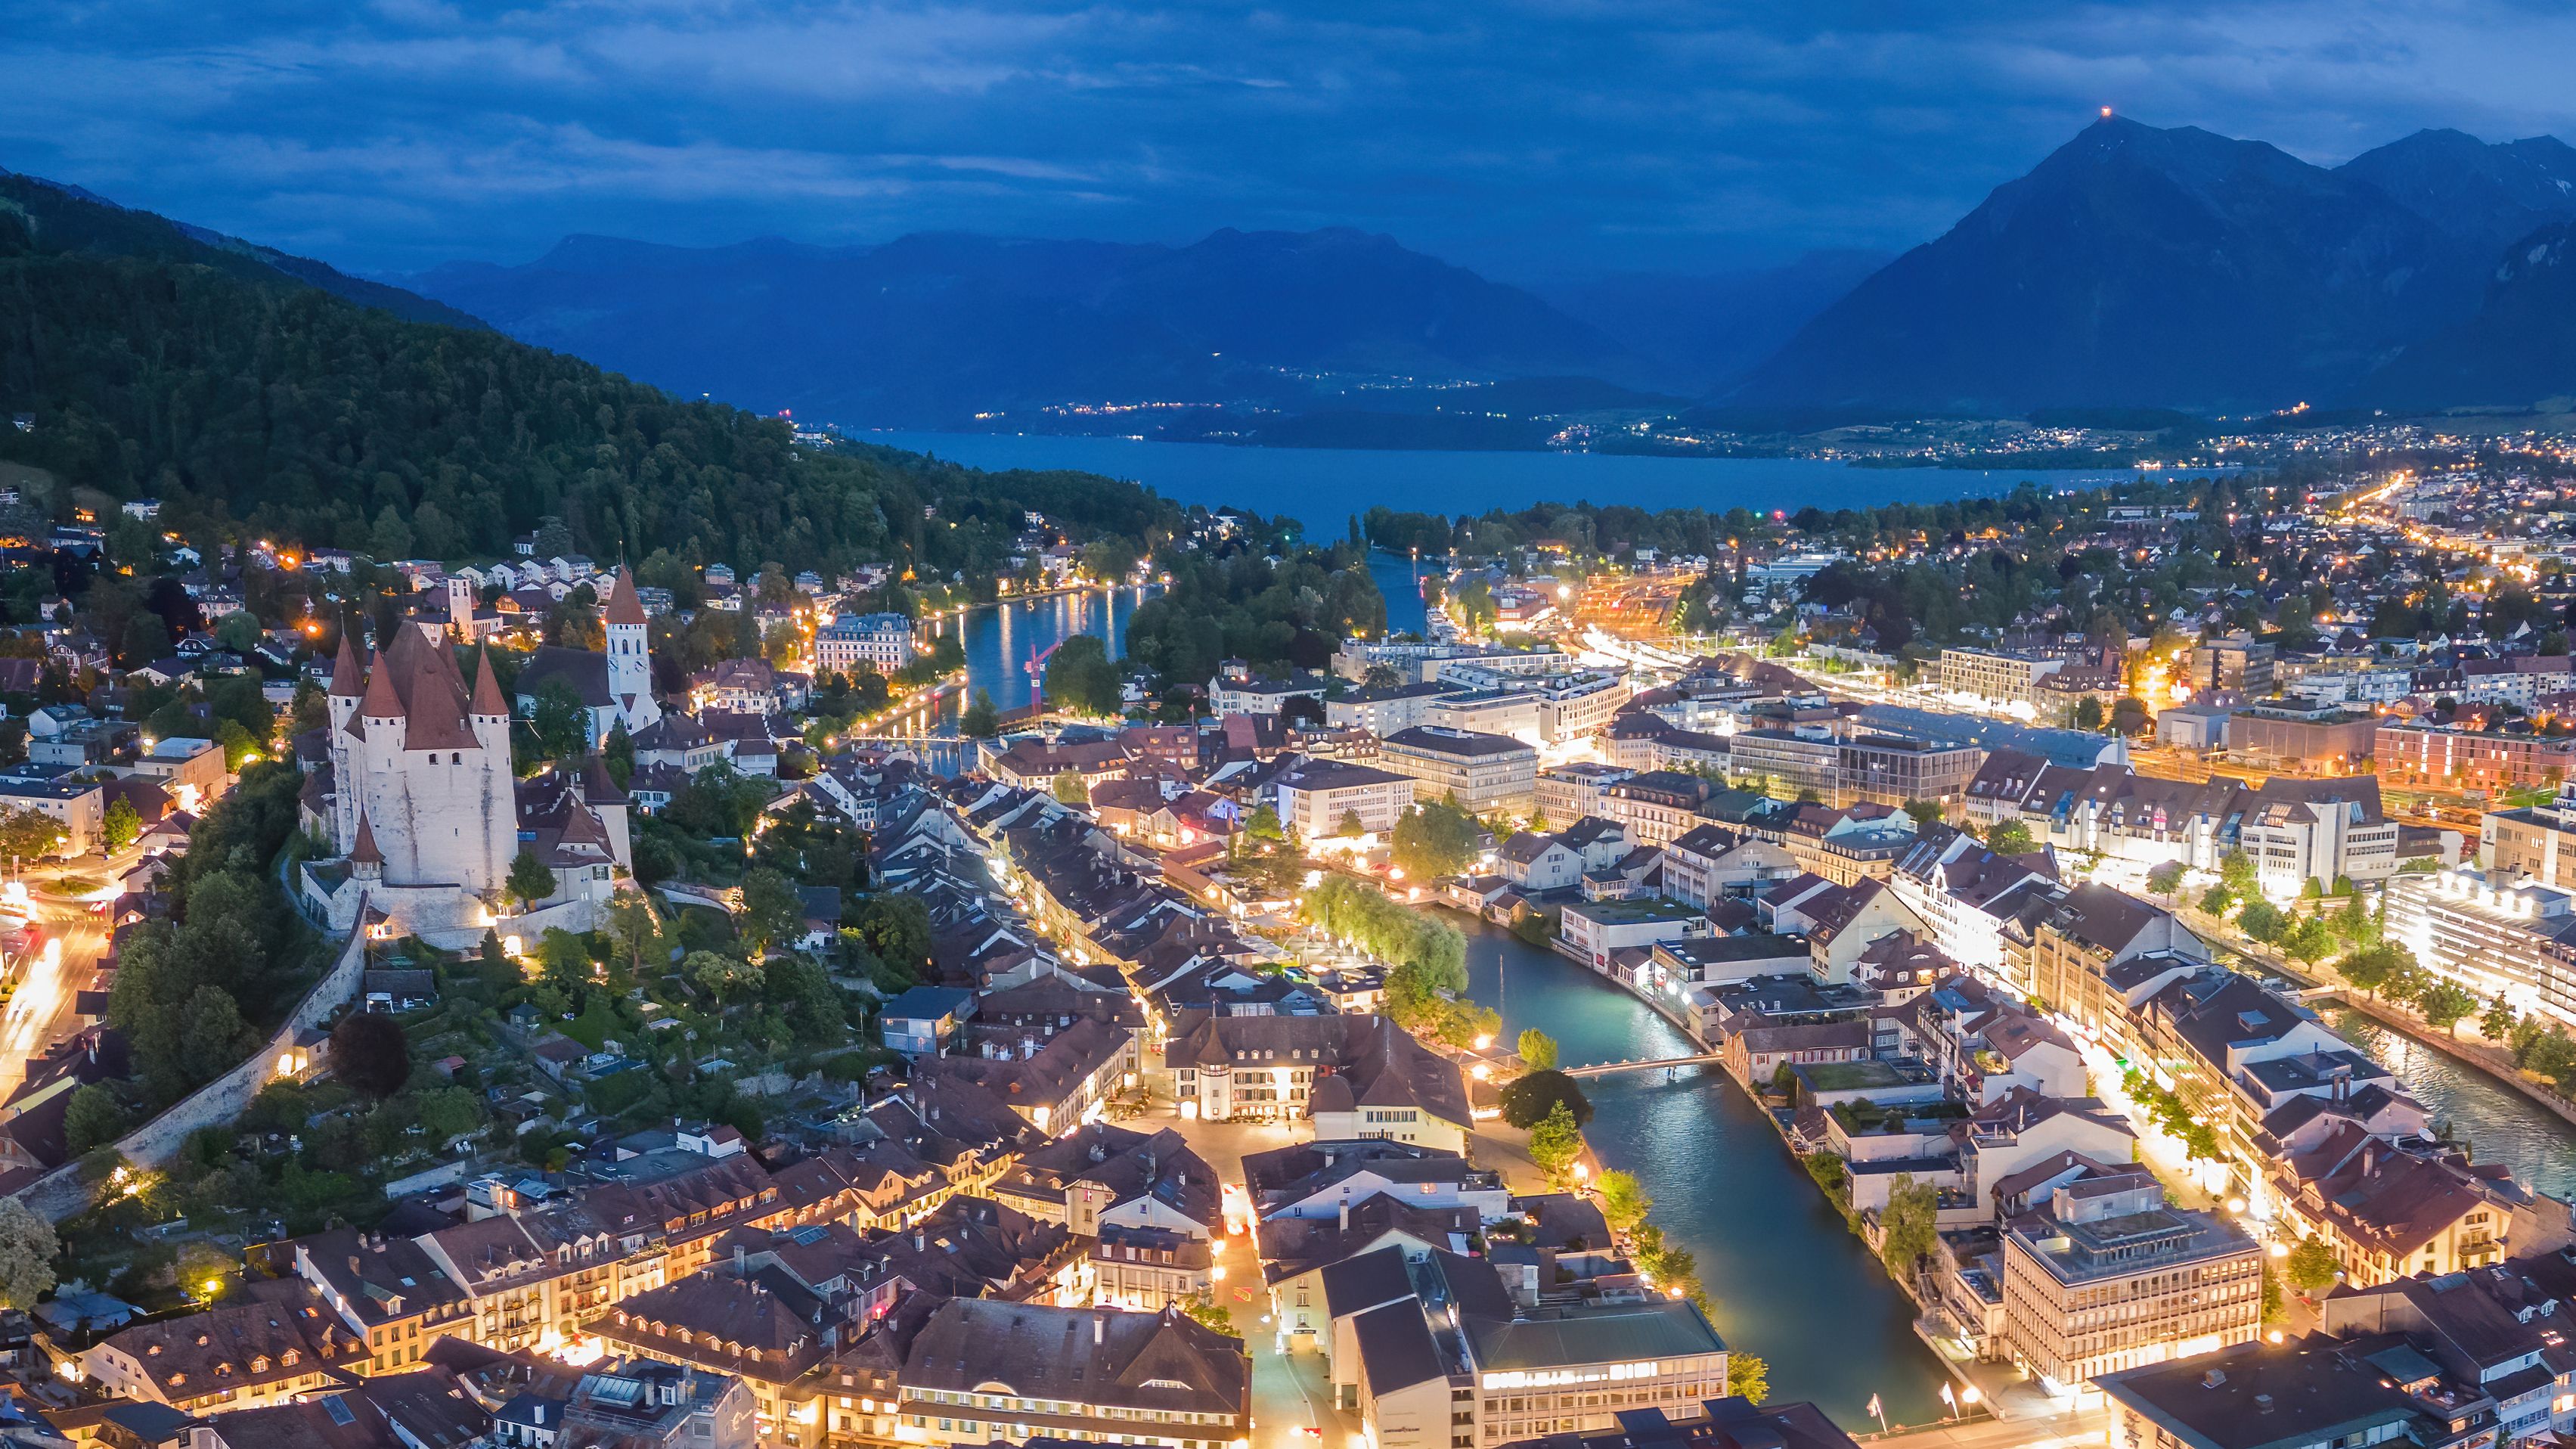 Veduta aerea del centro storico di Thun di notte, con il lago di Thun e le Alpi Bernesi sullo sfondo.